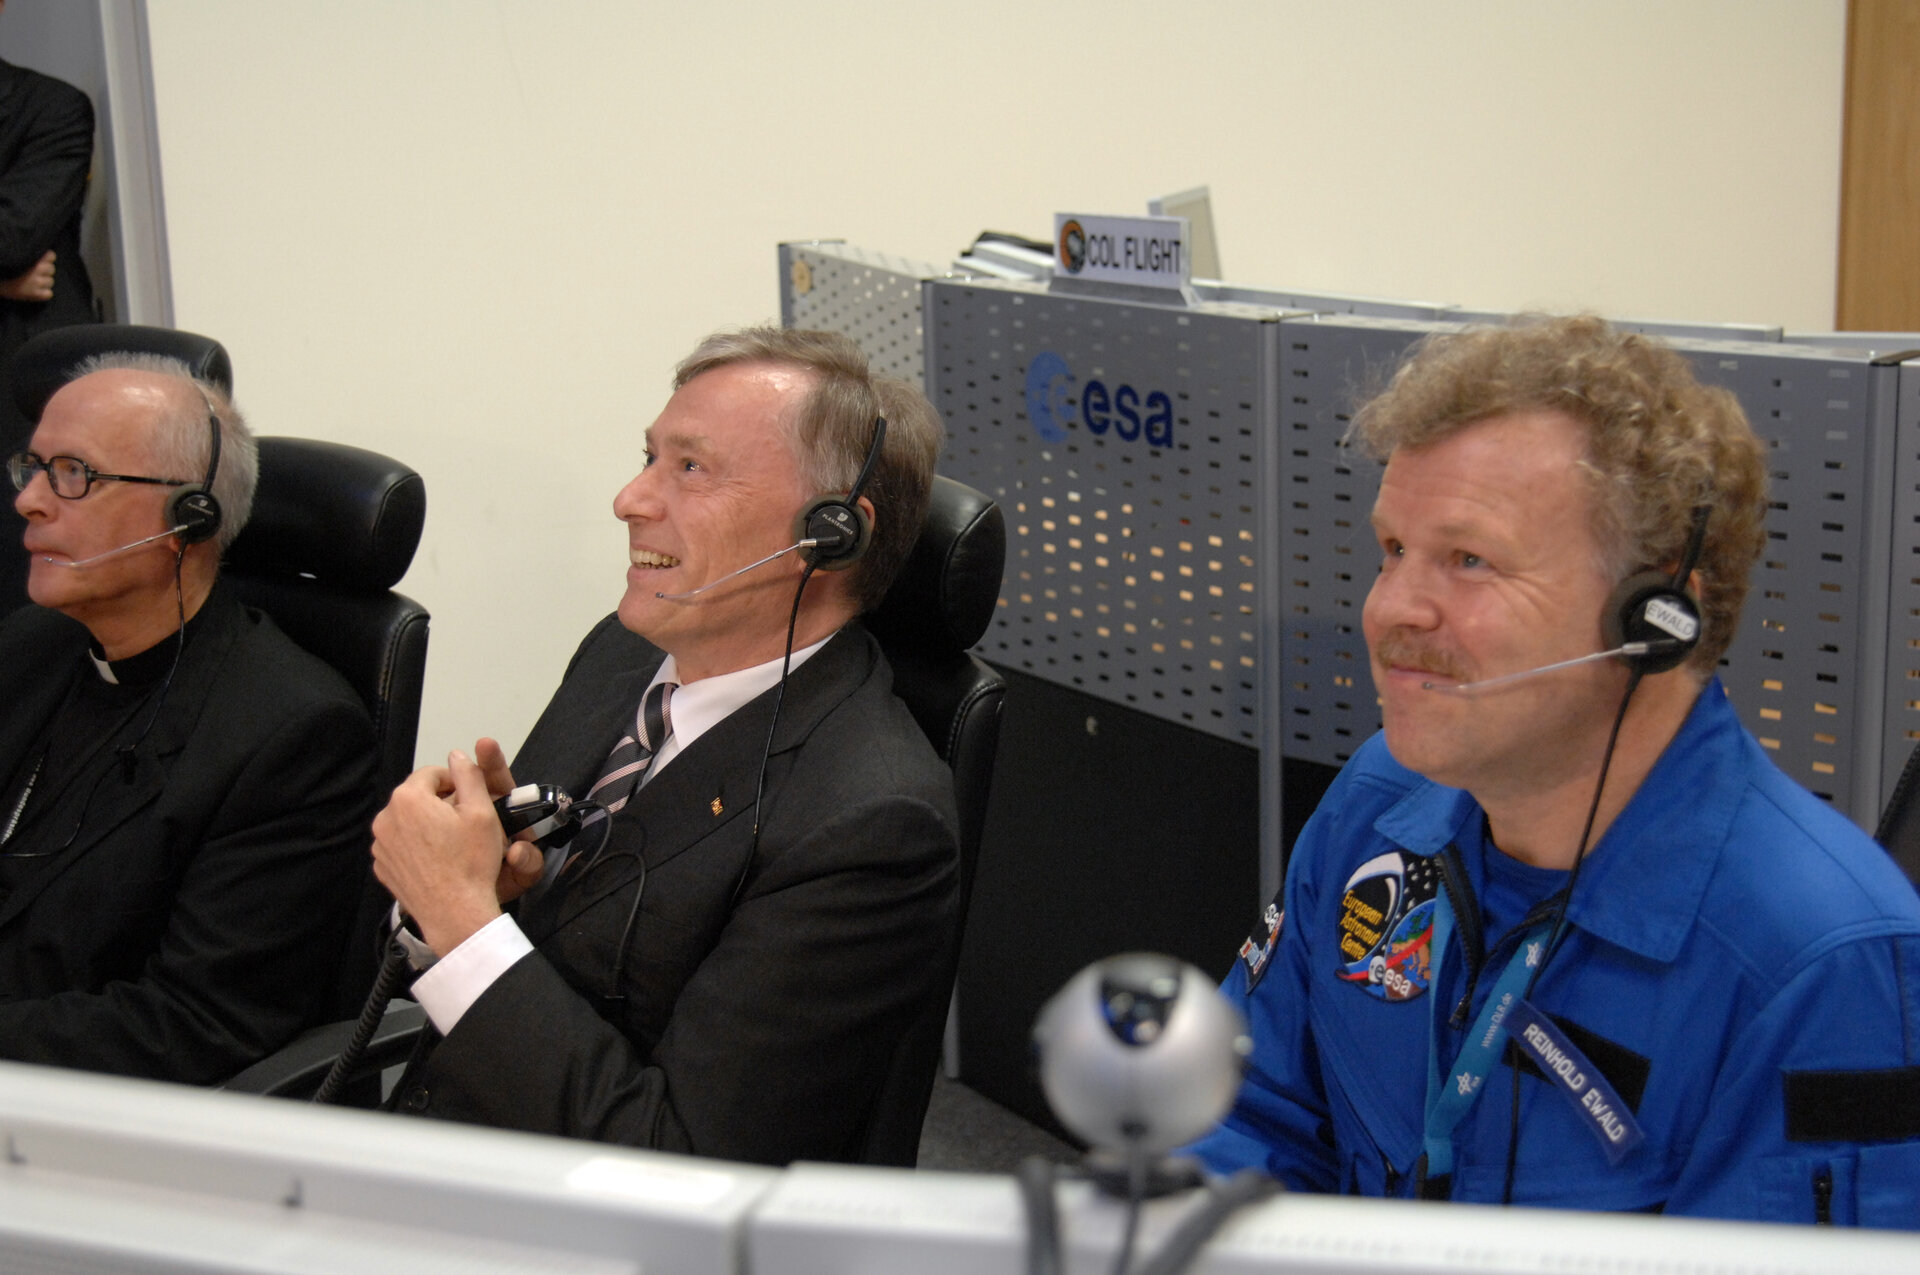 Bundespräsident Horst Köhler, Erzbischof Jean-Claude Perisset und ESA-Astronaut Reinhold Ewald beim "Livecall" mit der ISS